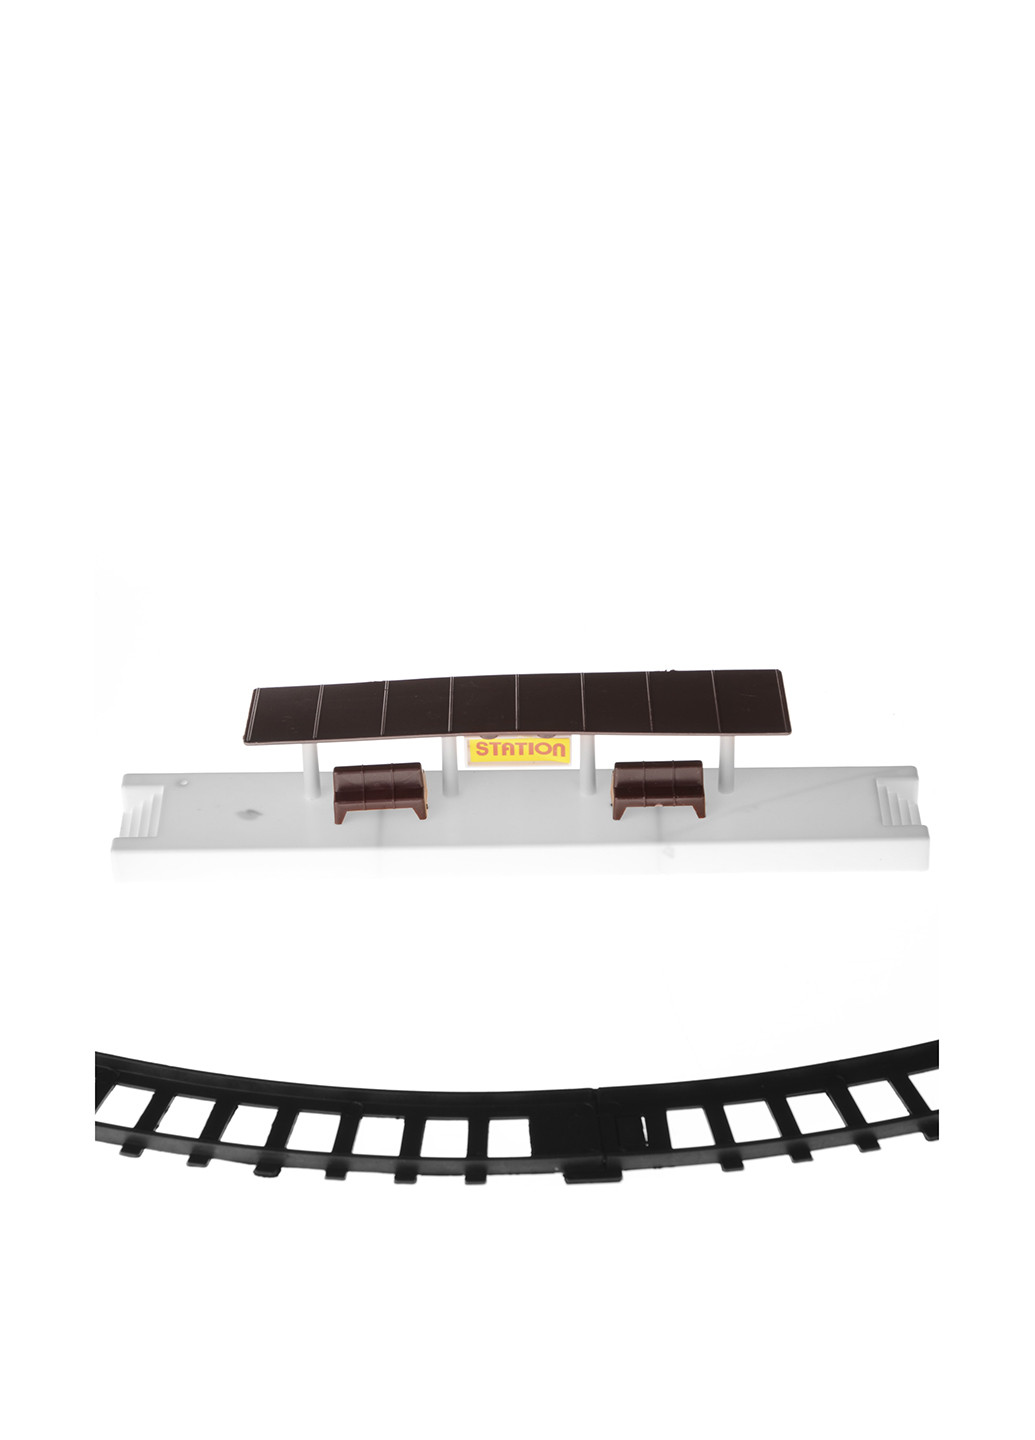 Игровой набор Железная дорога (12 пр.) NaNa (138015553)